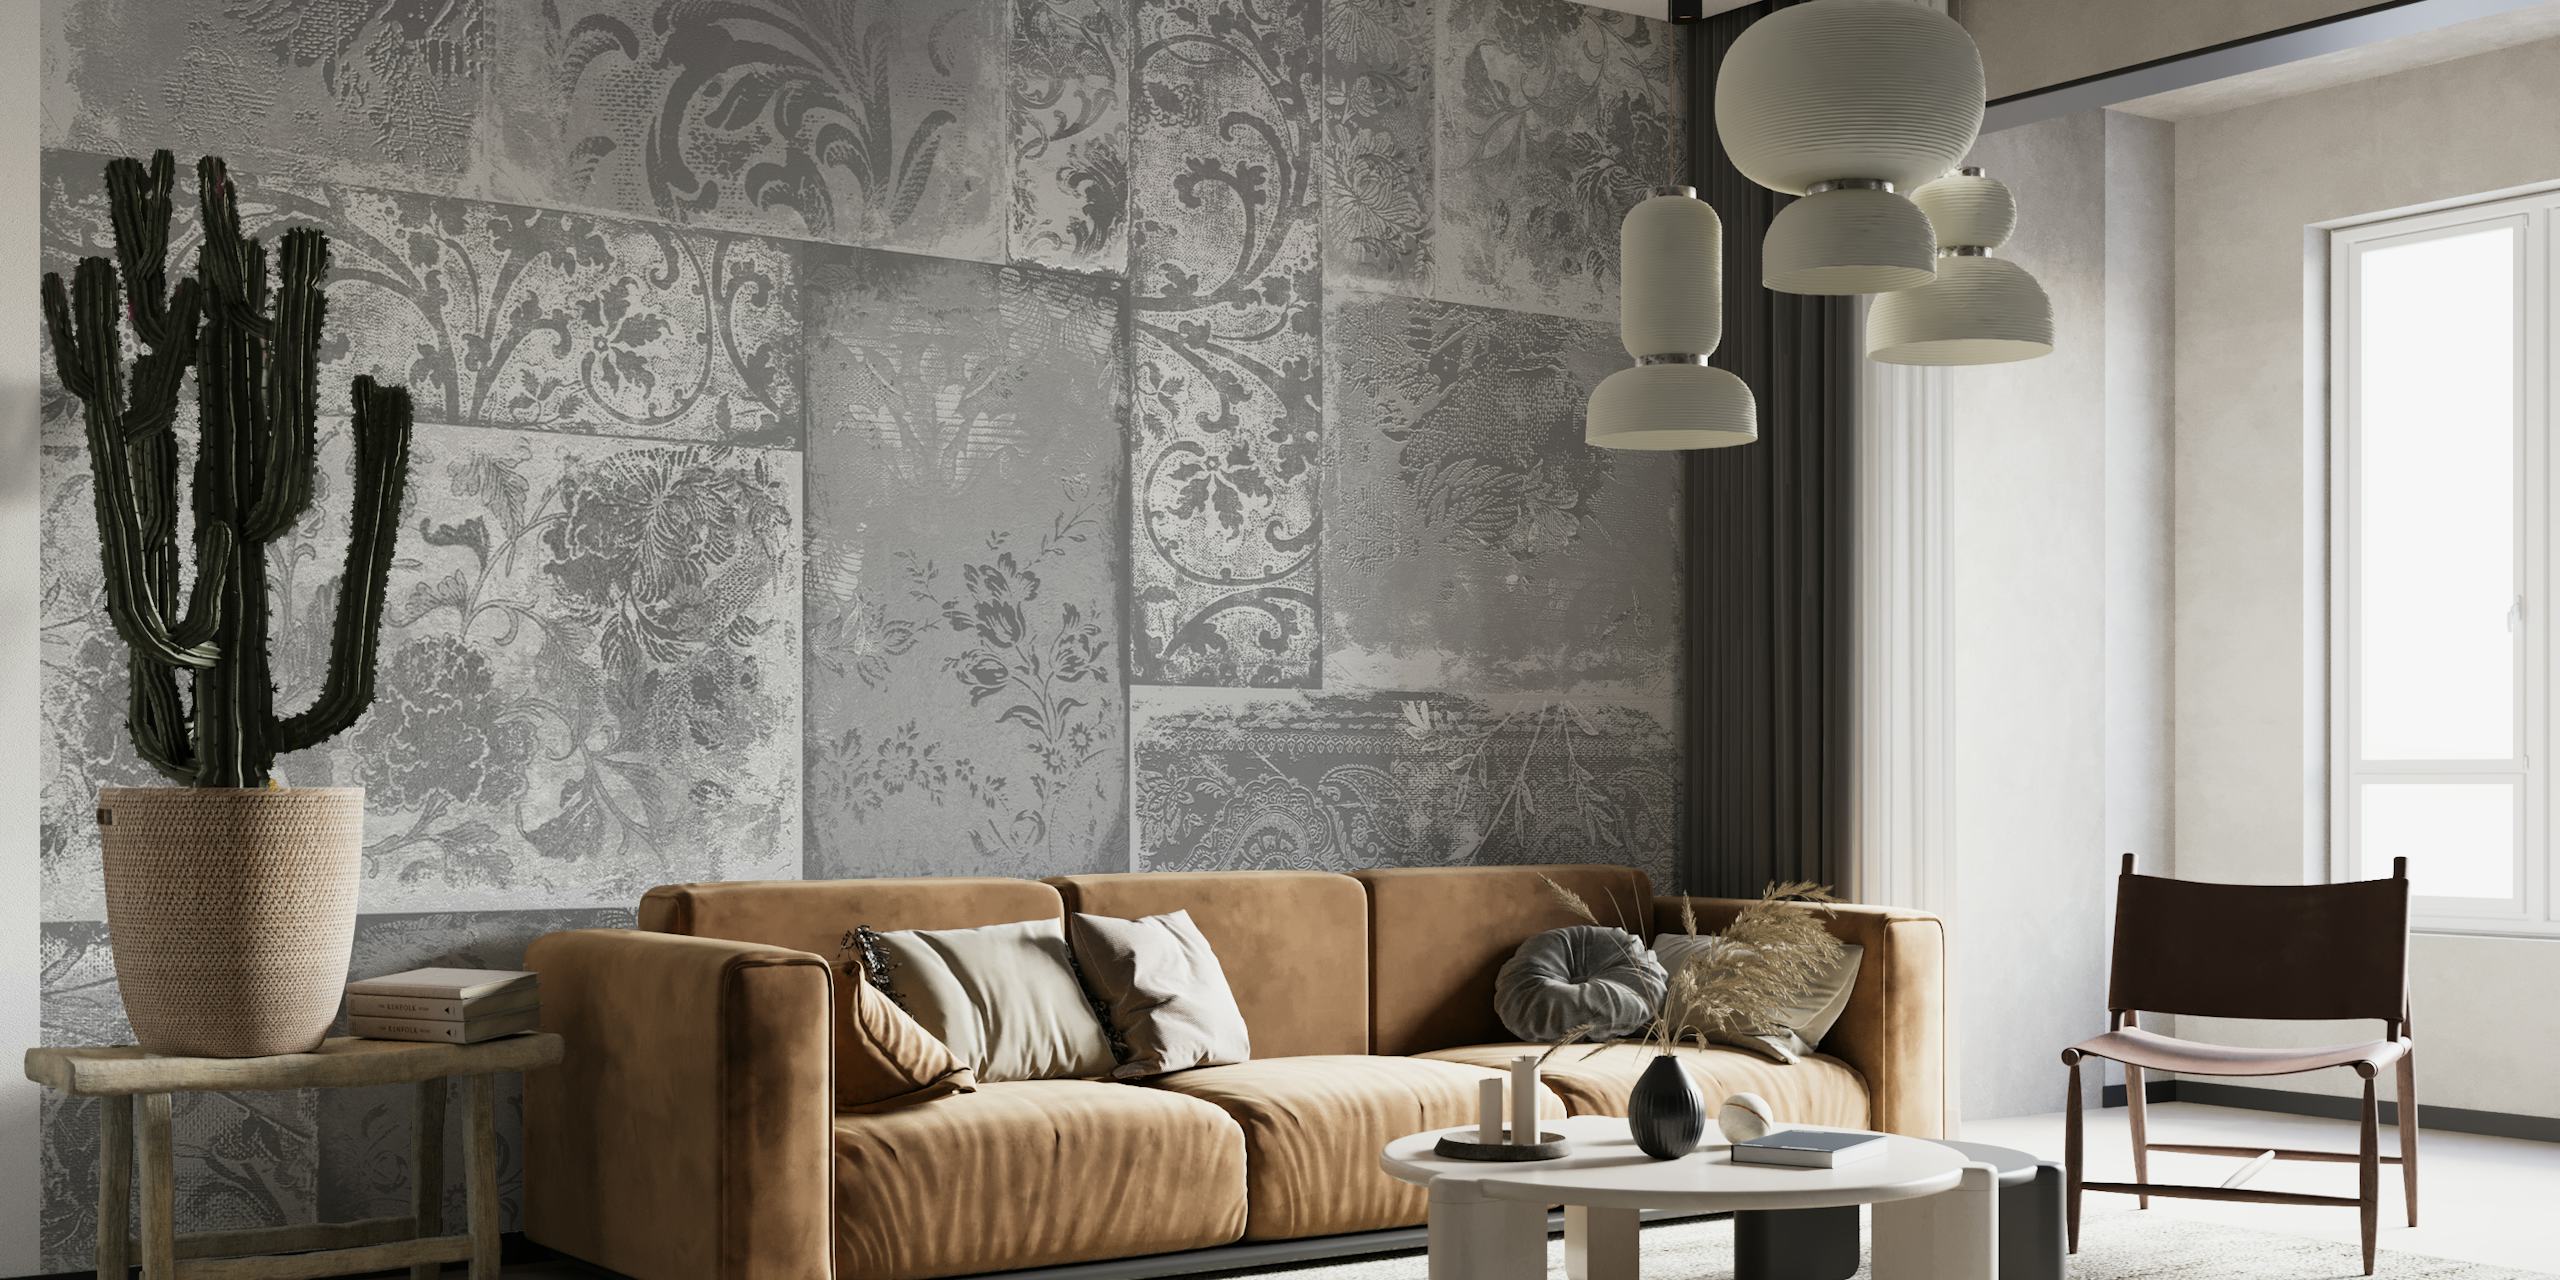 Fotomural vinílico de parede com padrões de retalhos boêmios em tons de cinza